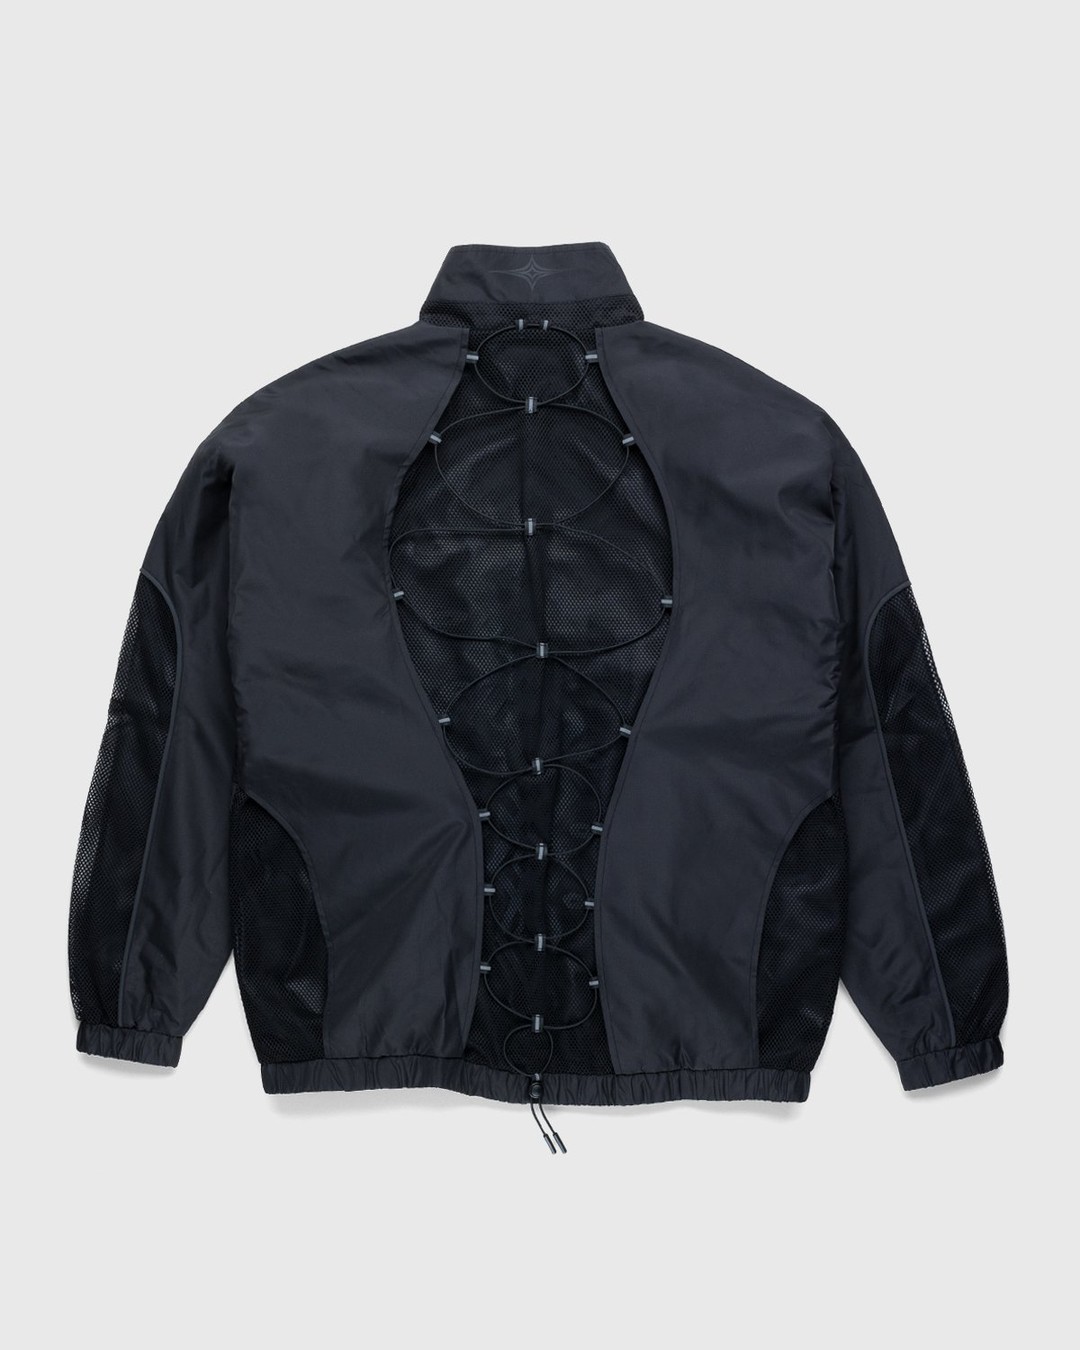 Umbro x Sucux – Zenomorph Jacket Black - Jackets - Black - Image 2